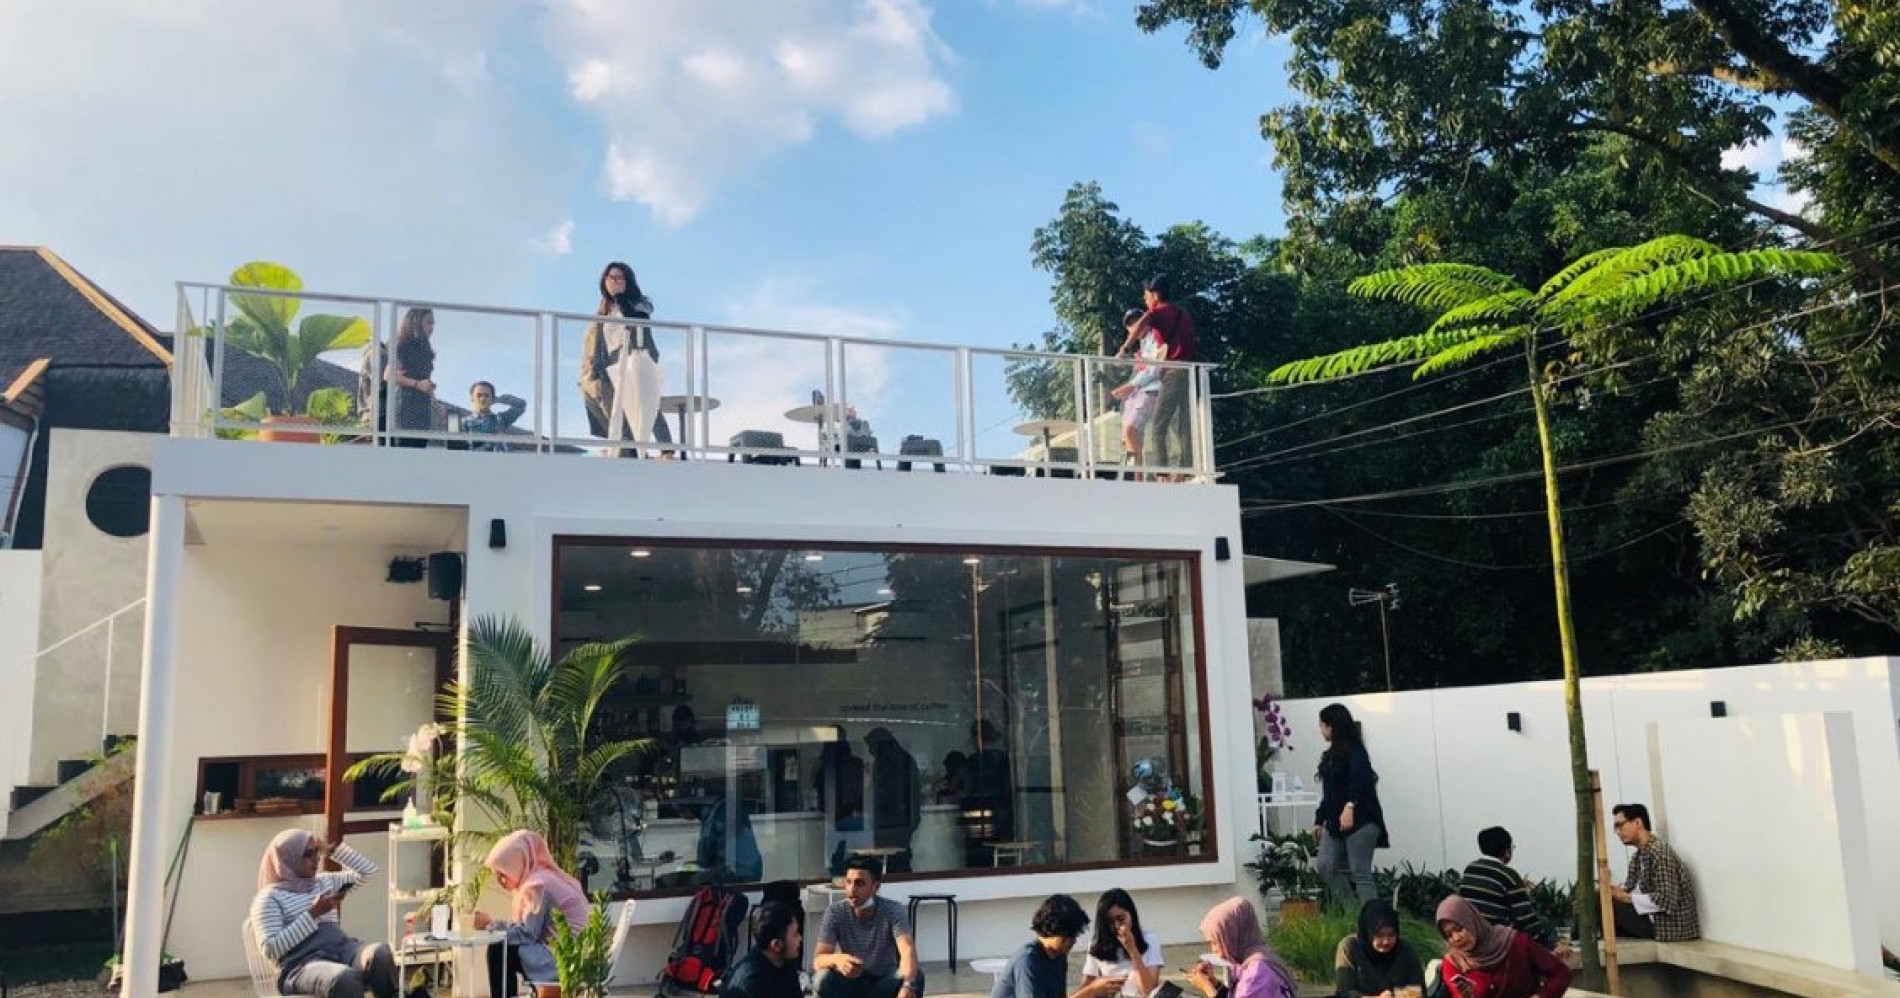 Kafe di Bandung yang Cocok Buat Bukber. (Sumber gambar: nongkrongbandung.com)